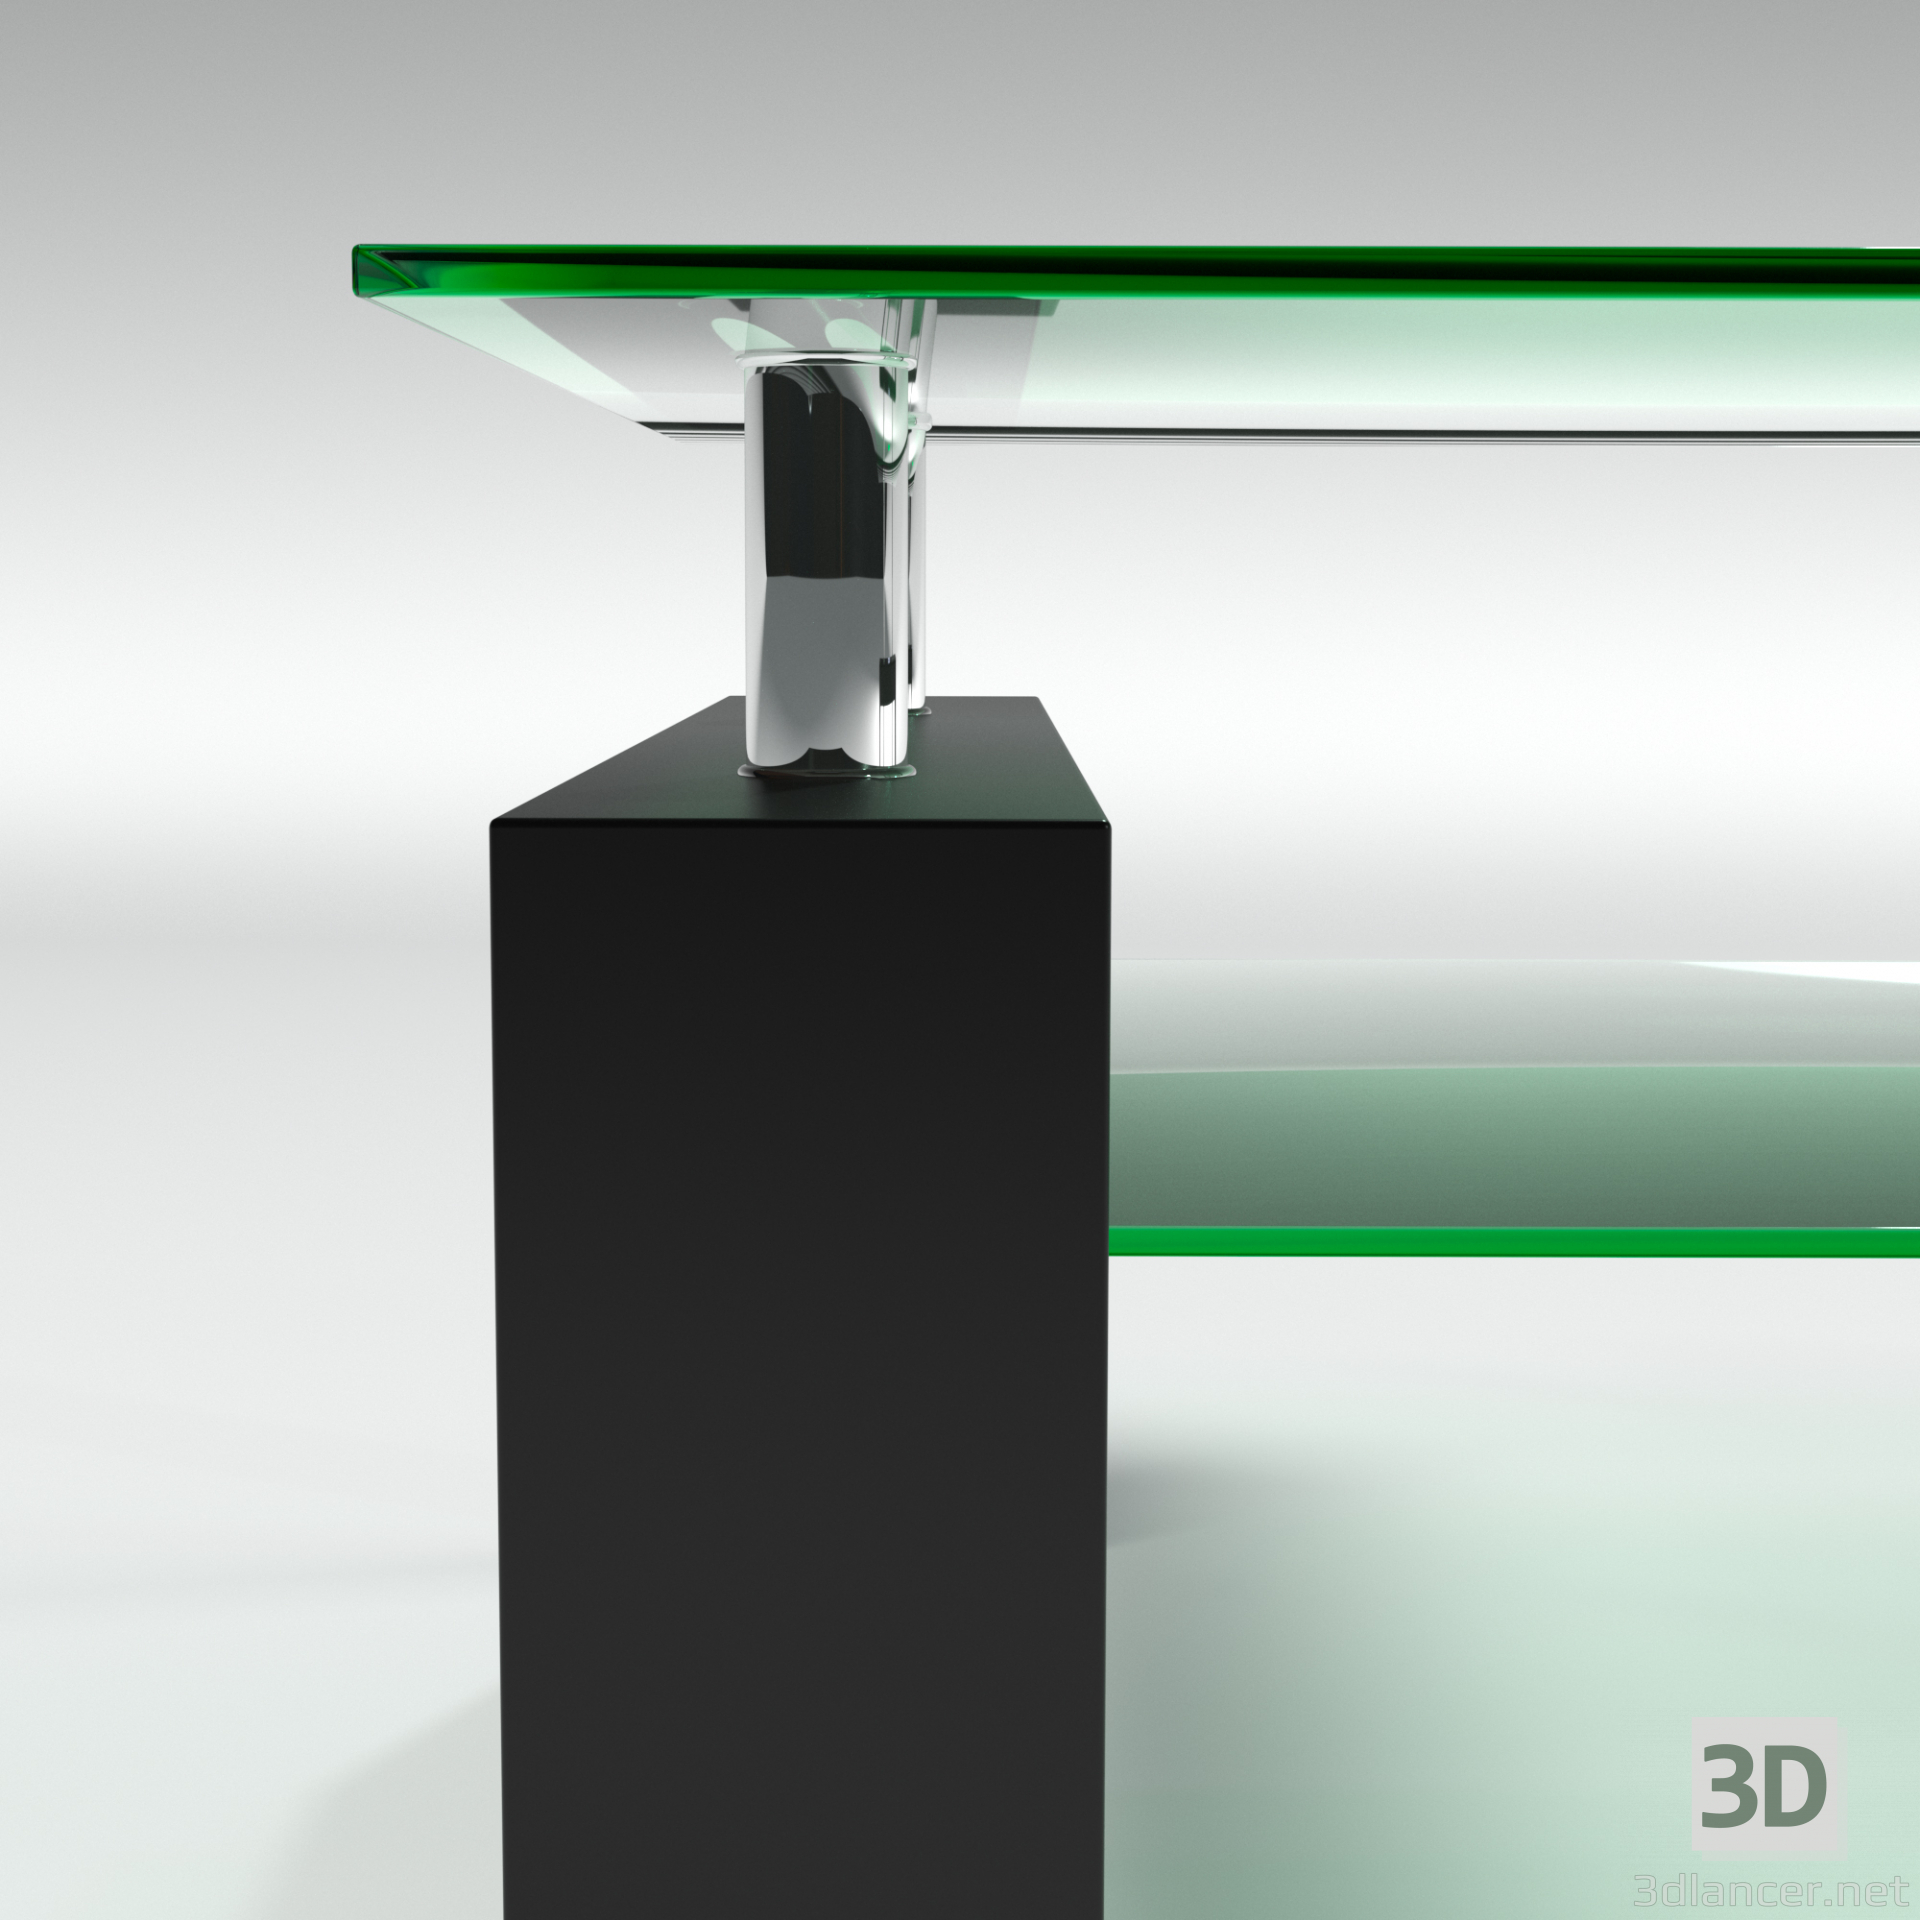 modèle 3D de table en verre acheter - rendu